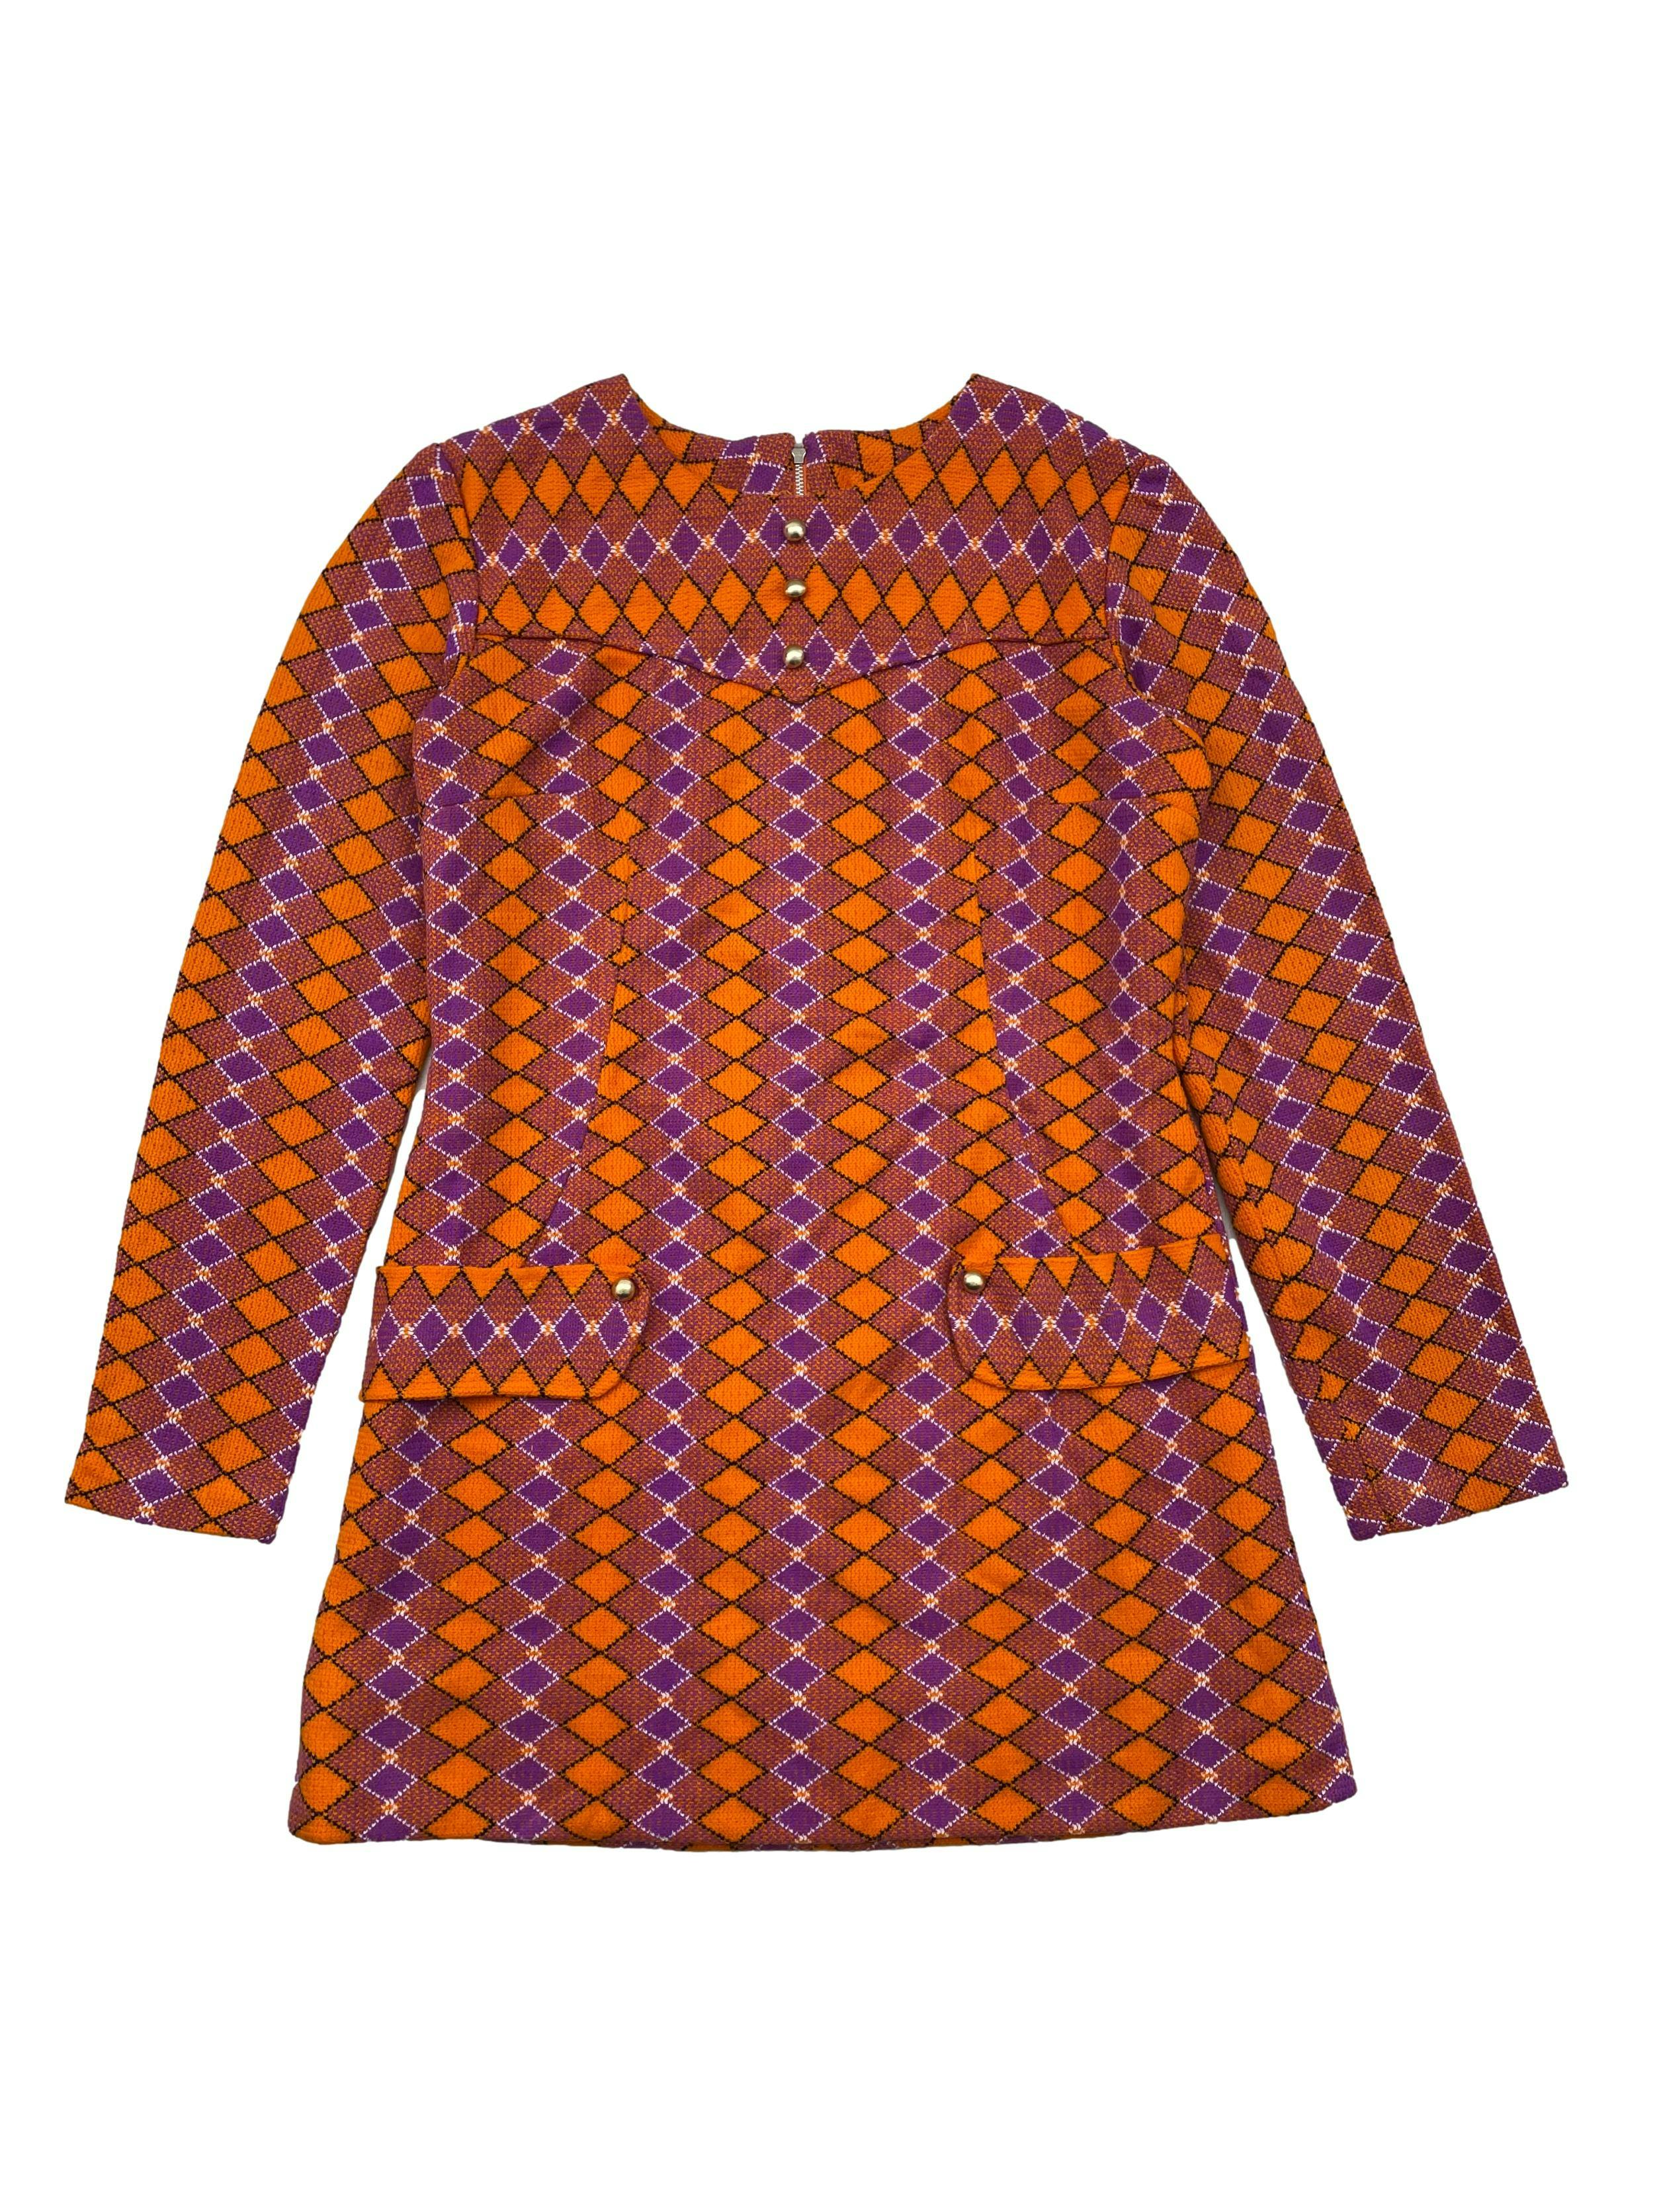 Vestido vintage de tweed con patrón de rombos en naranja y morado, forrado, corte en A,  pinzas, cuello redondo, cierre en espalda y botones dorados. Busto 90cm, Largo 72cm.